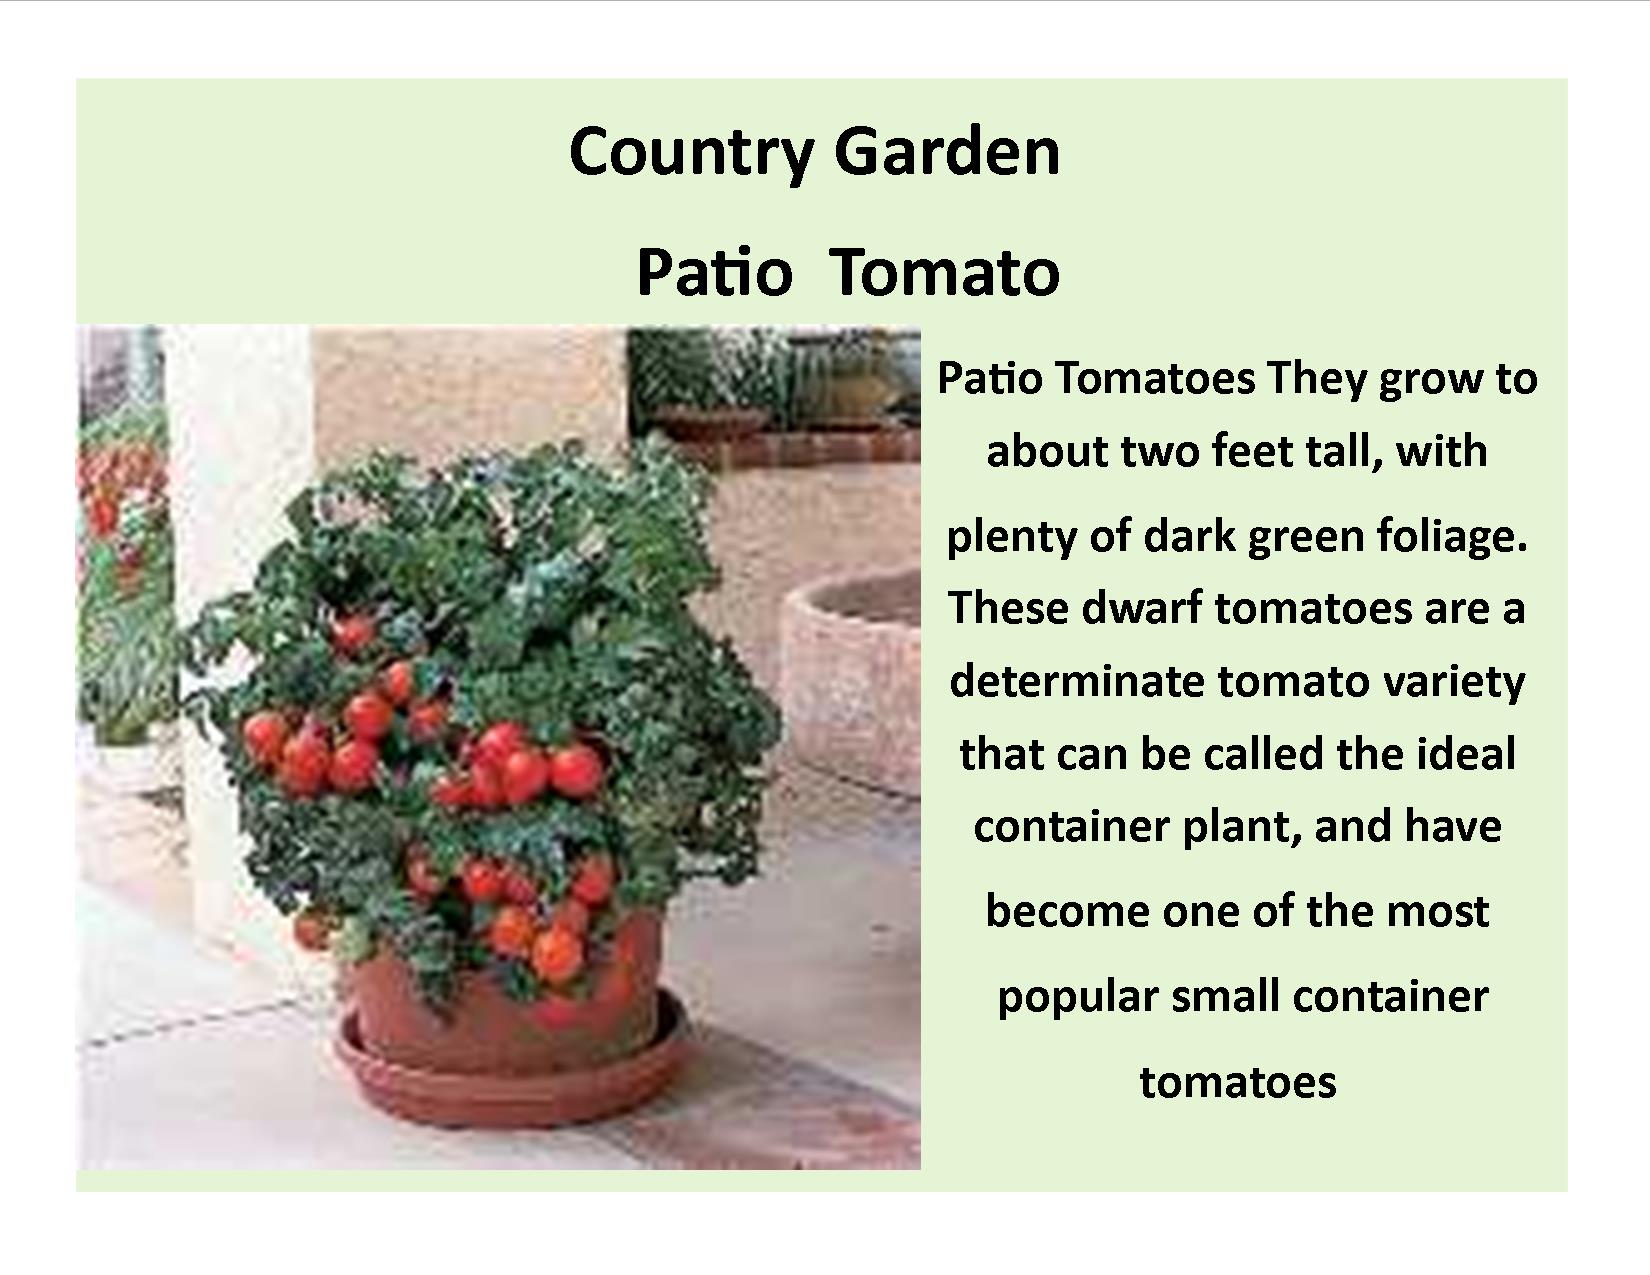 Patio Tomatoes